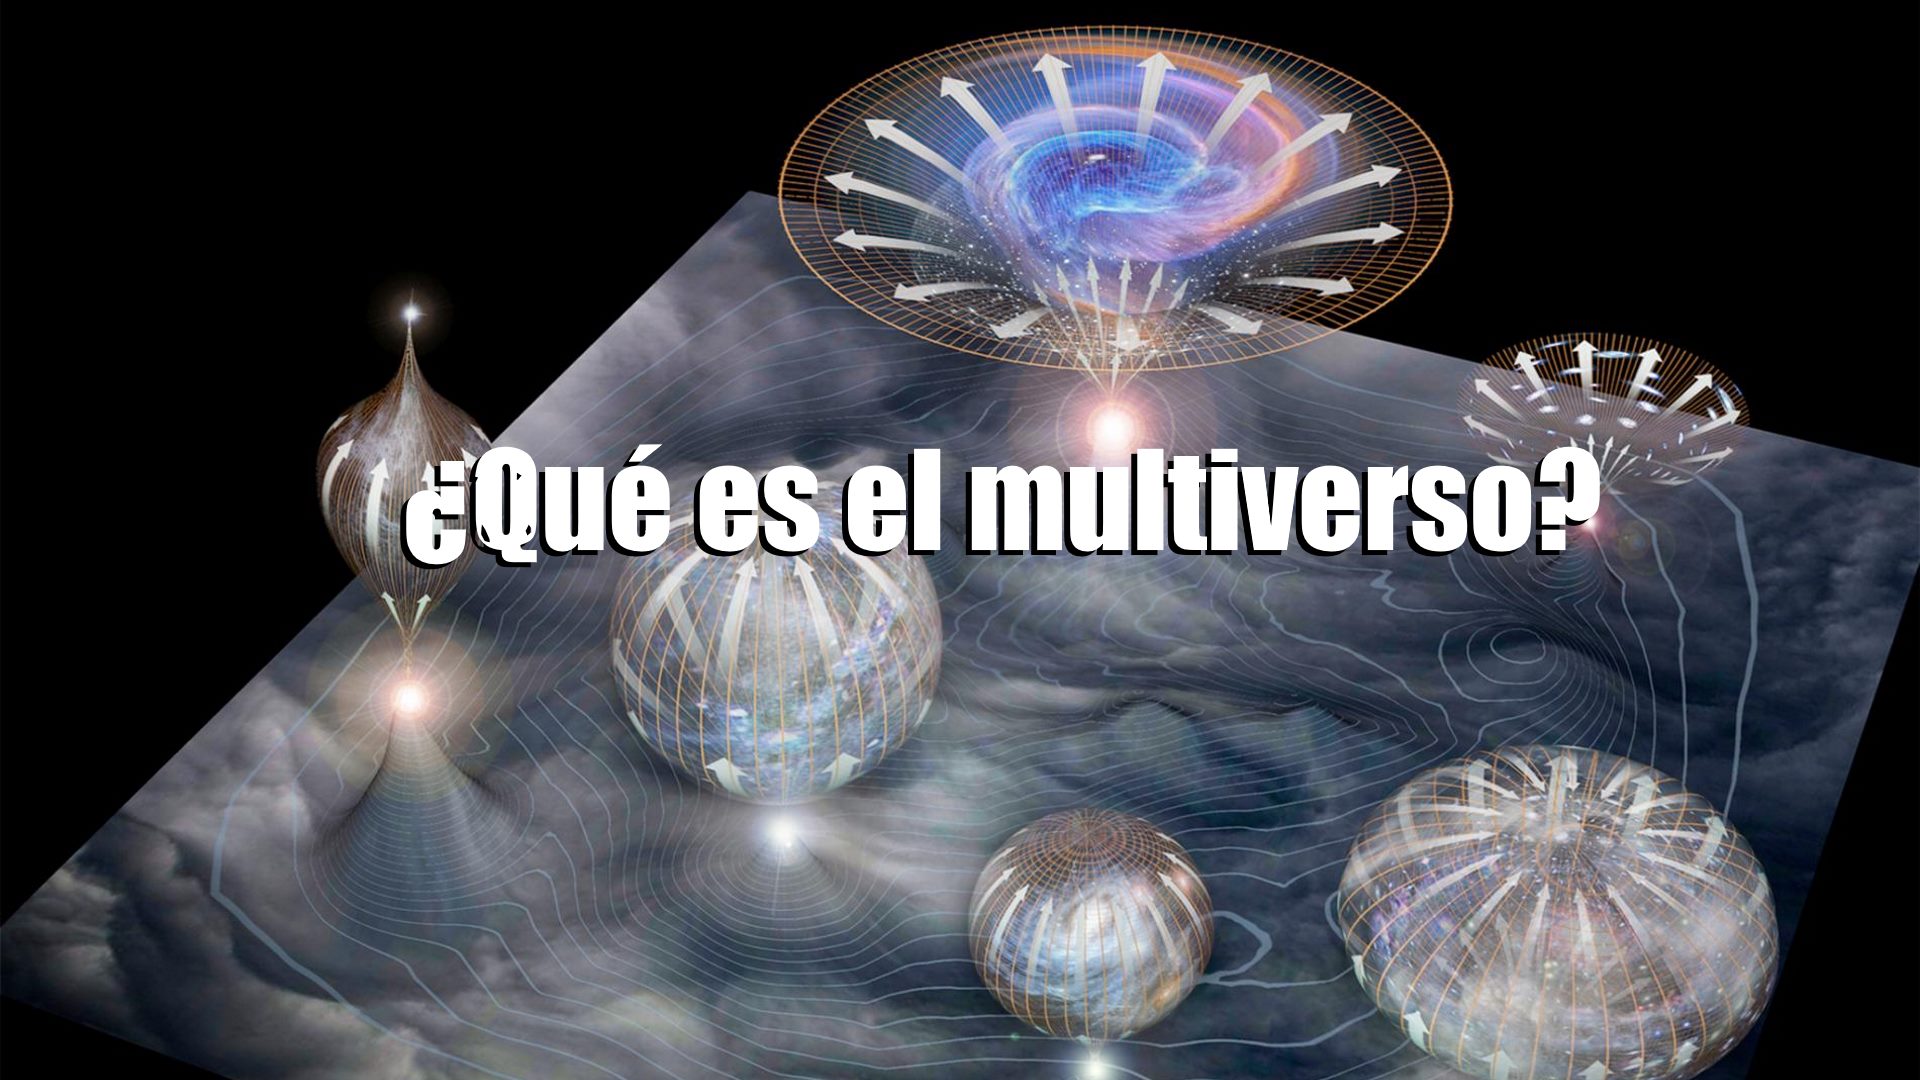 El multiverso: ¿existen otros universos? (Vídeo)